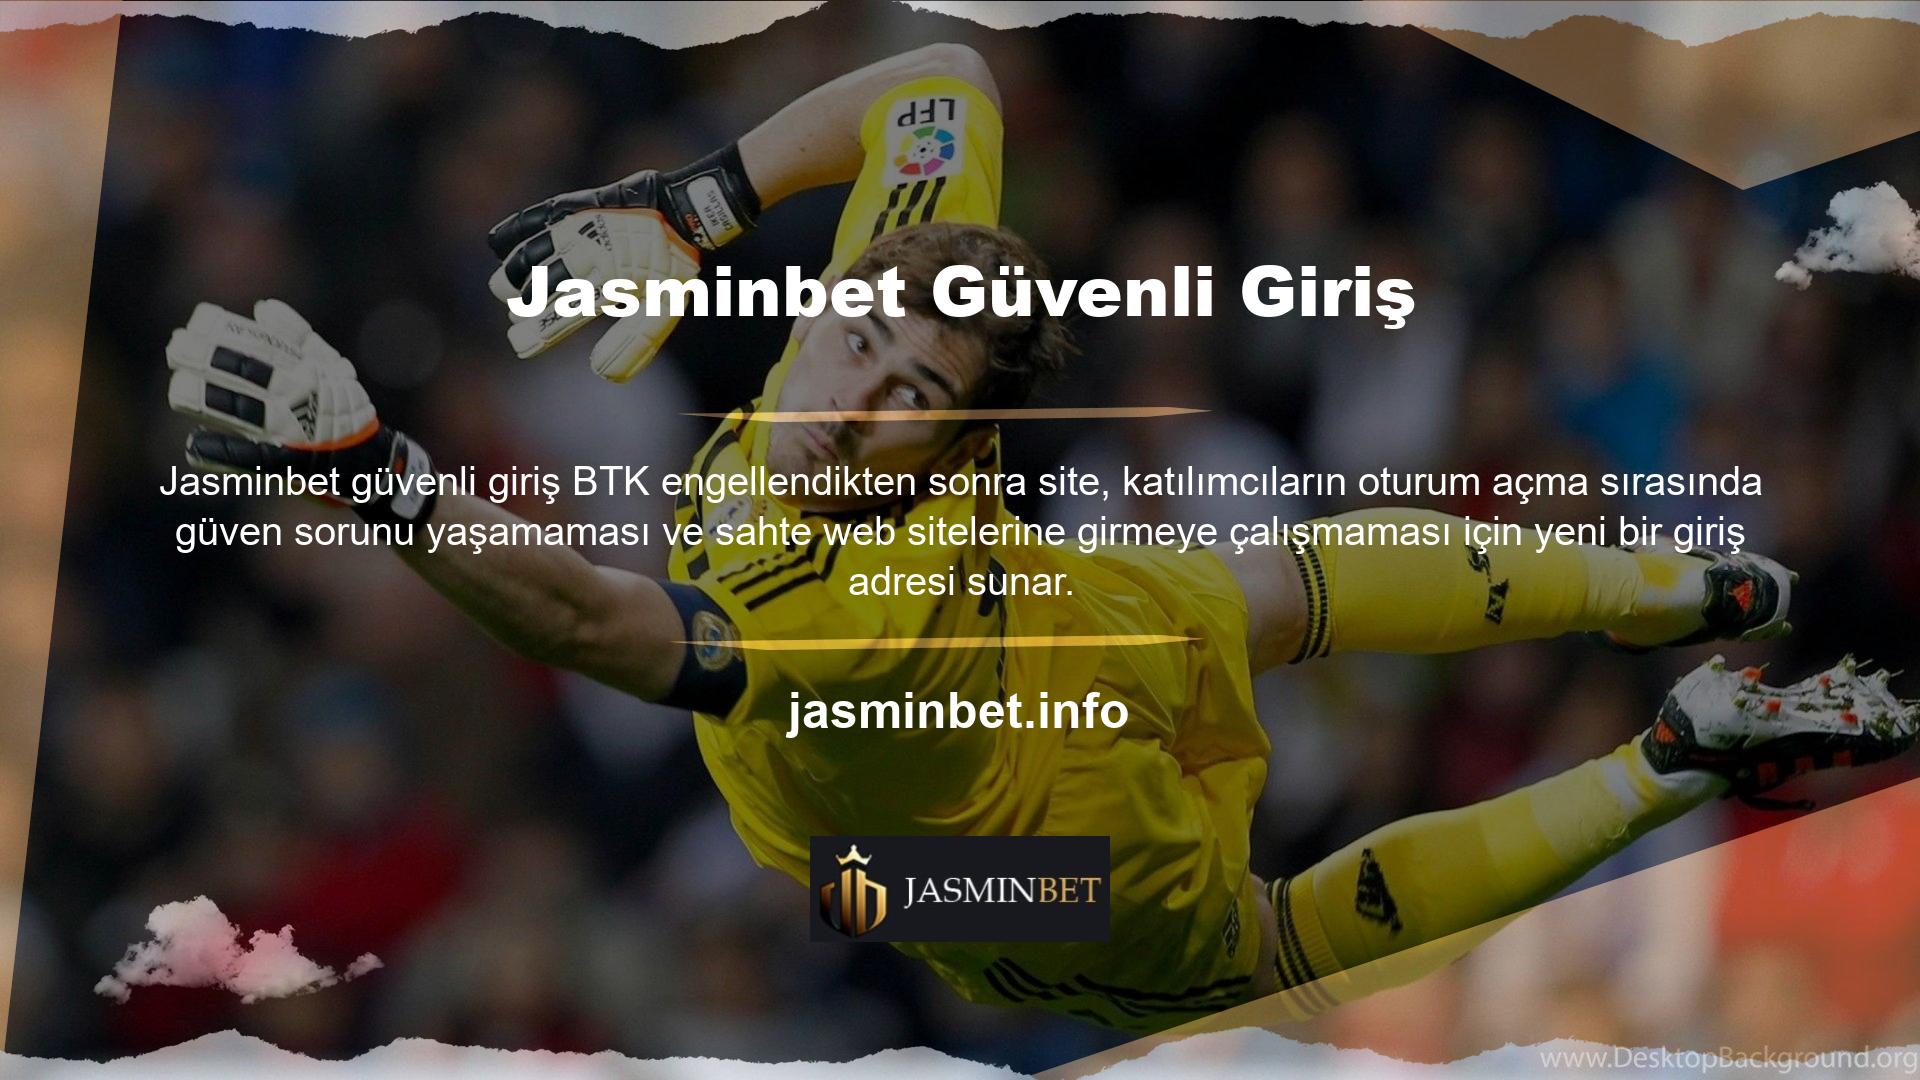 Yeni Jasminbet giriş adresi, kullanıcılarına güvenli bir giriş sunuyor